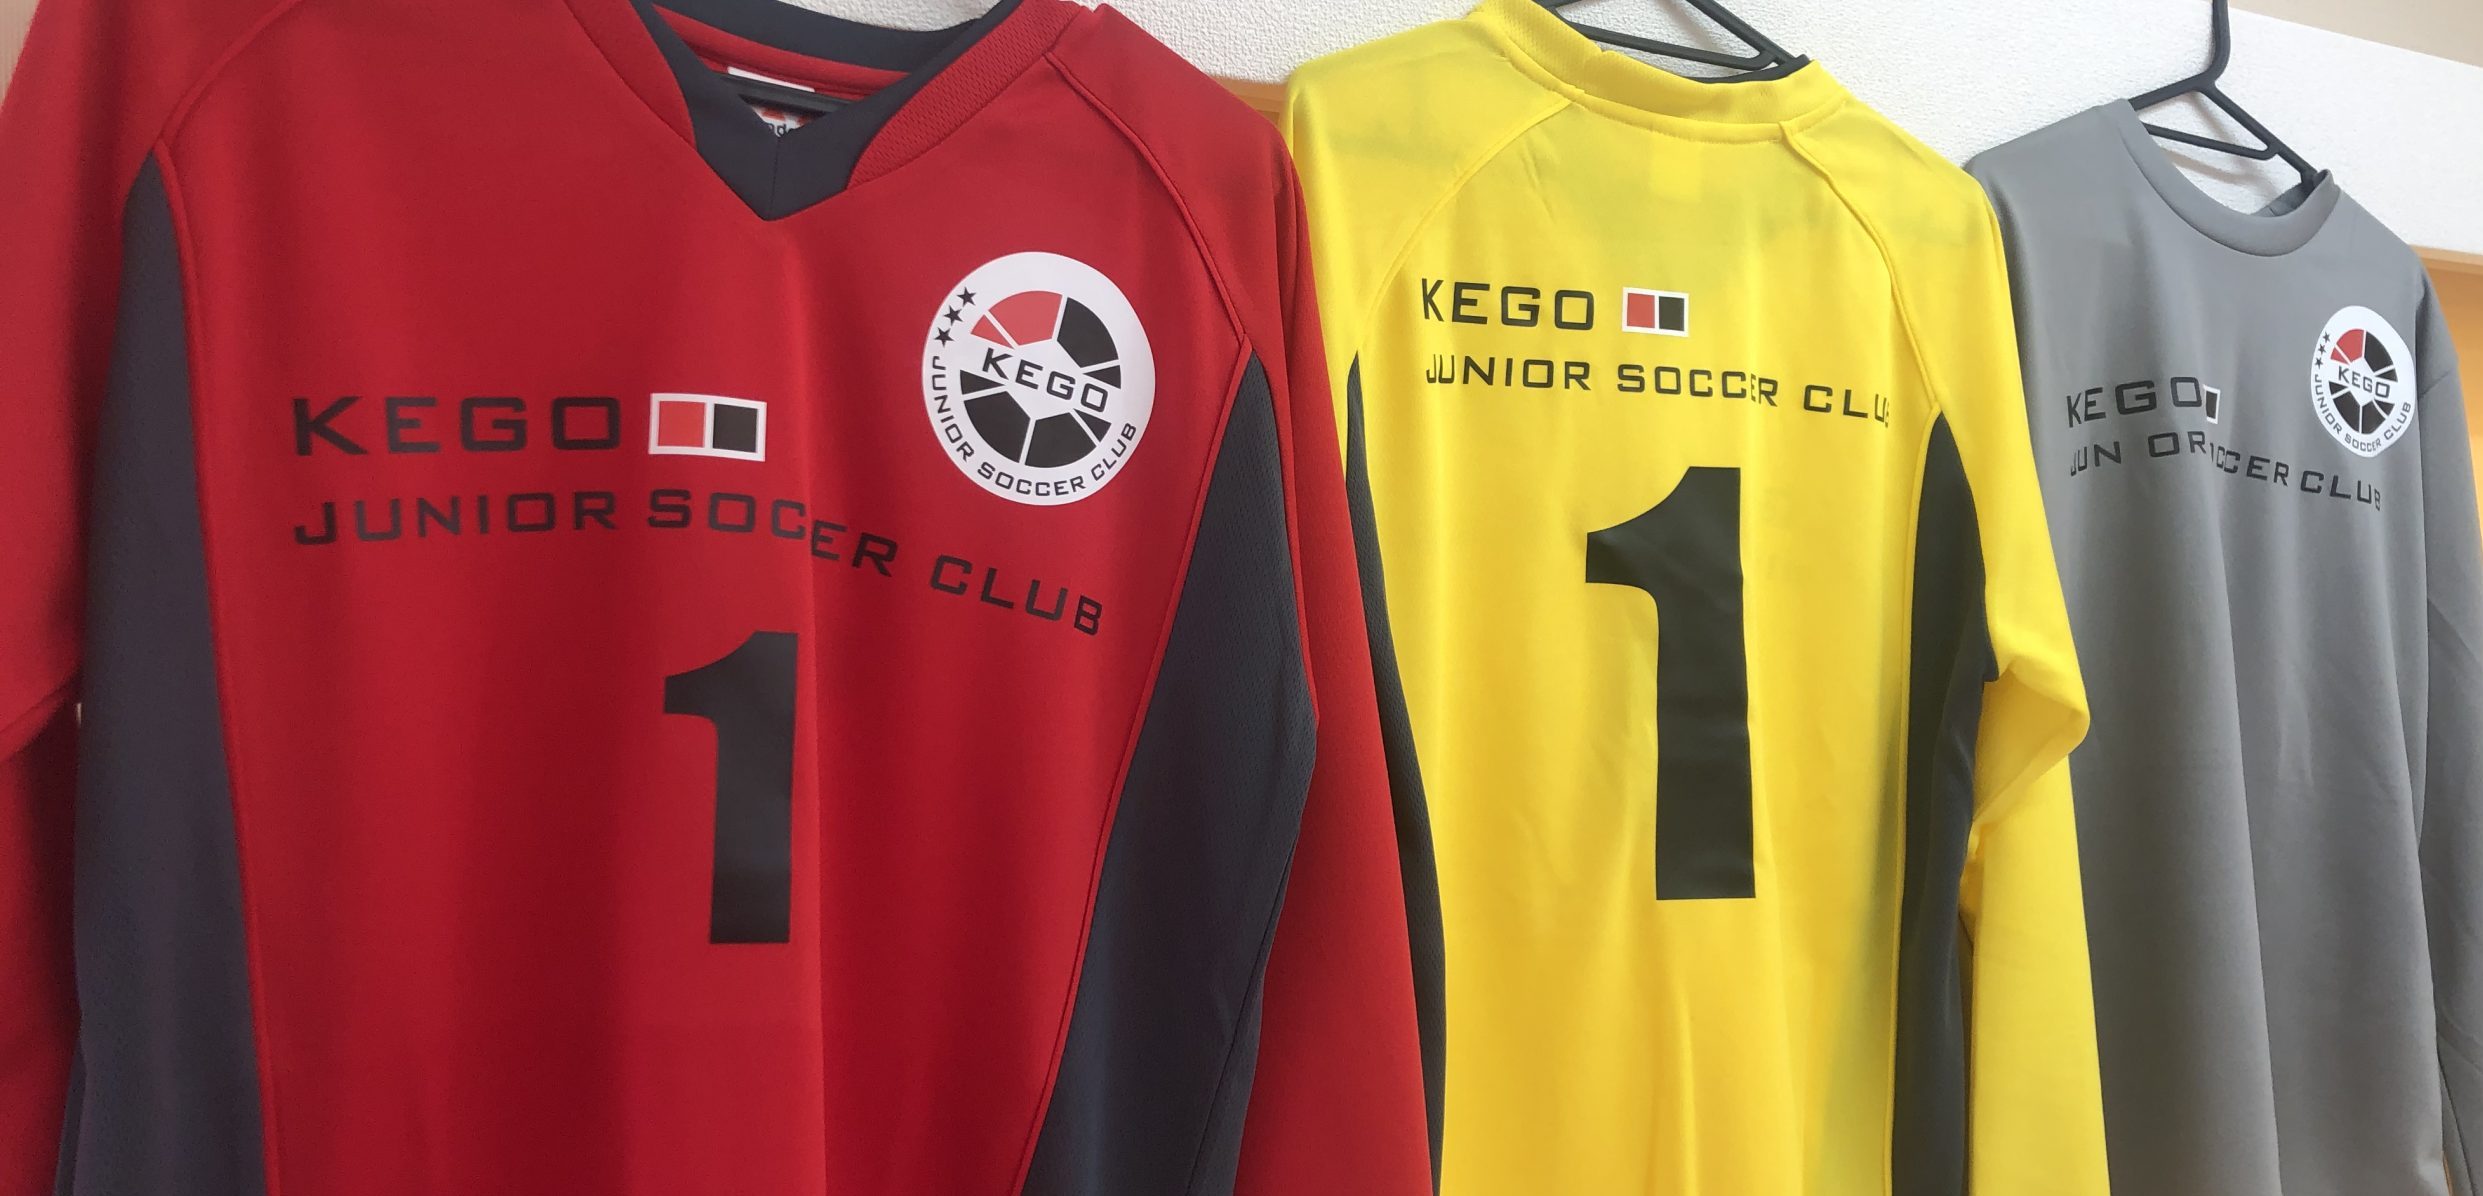 新gkユニフォーム 福岡市中央区 けごジュニアサッカークラブ